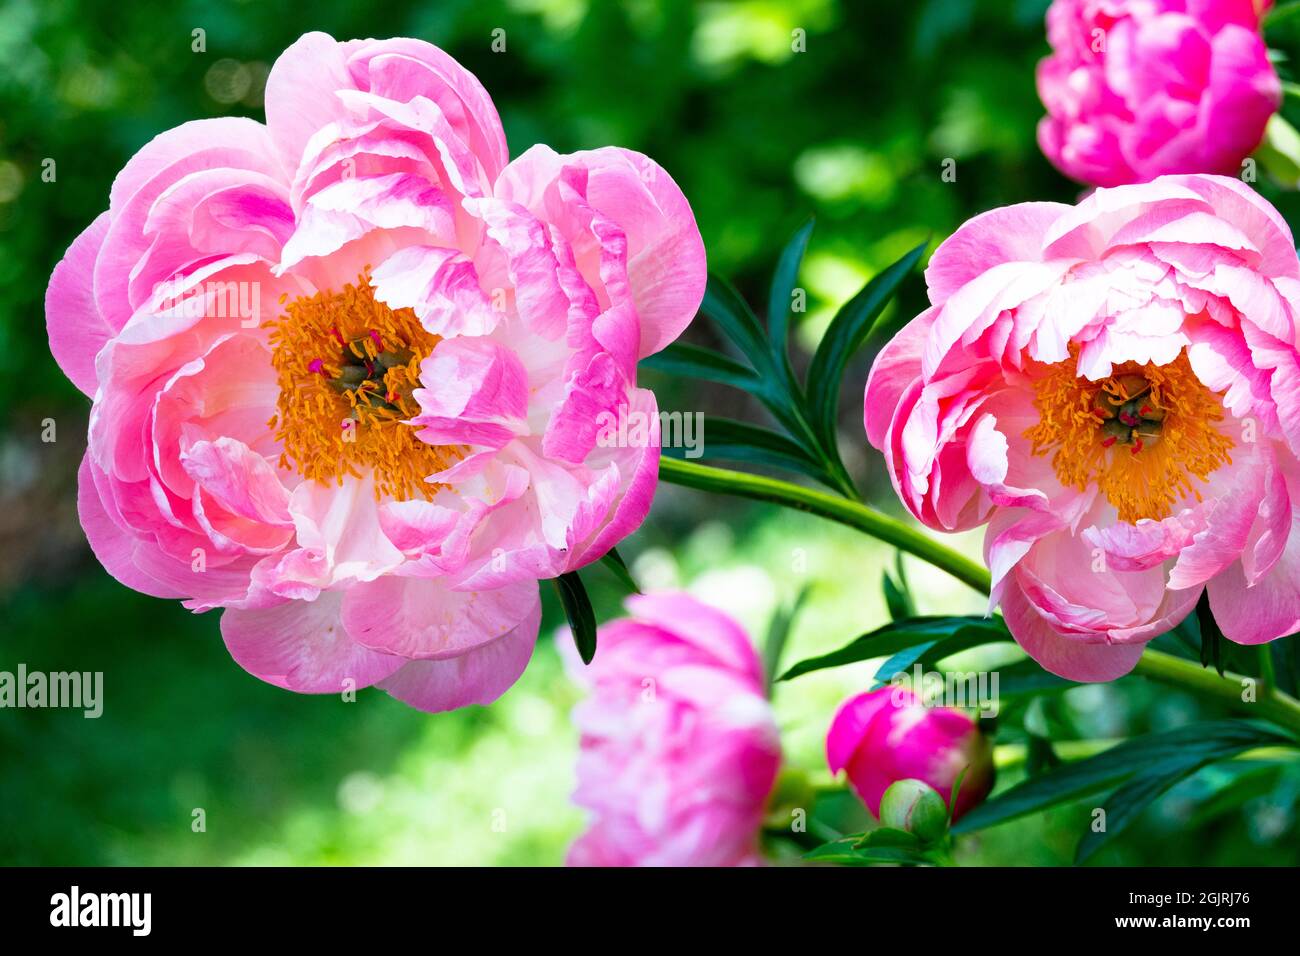 Peony flower 'Coral Charm' Florece grande Rosa peony en el jardín Foto de stock